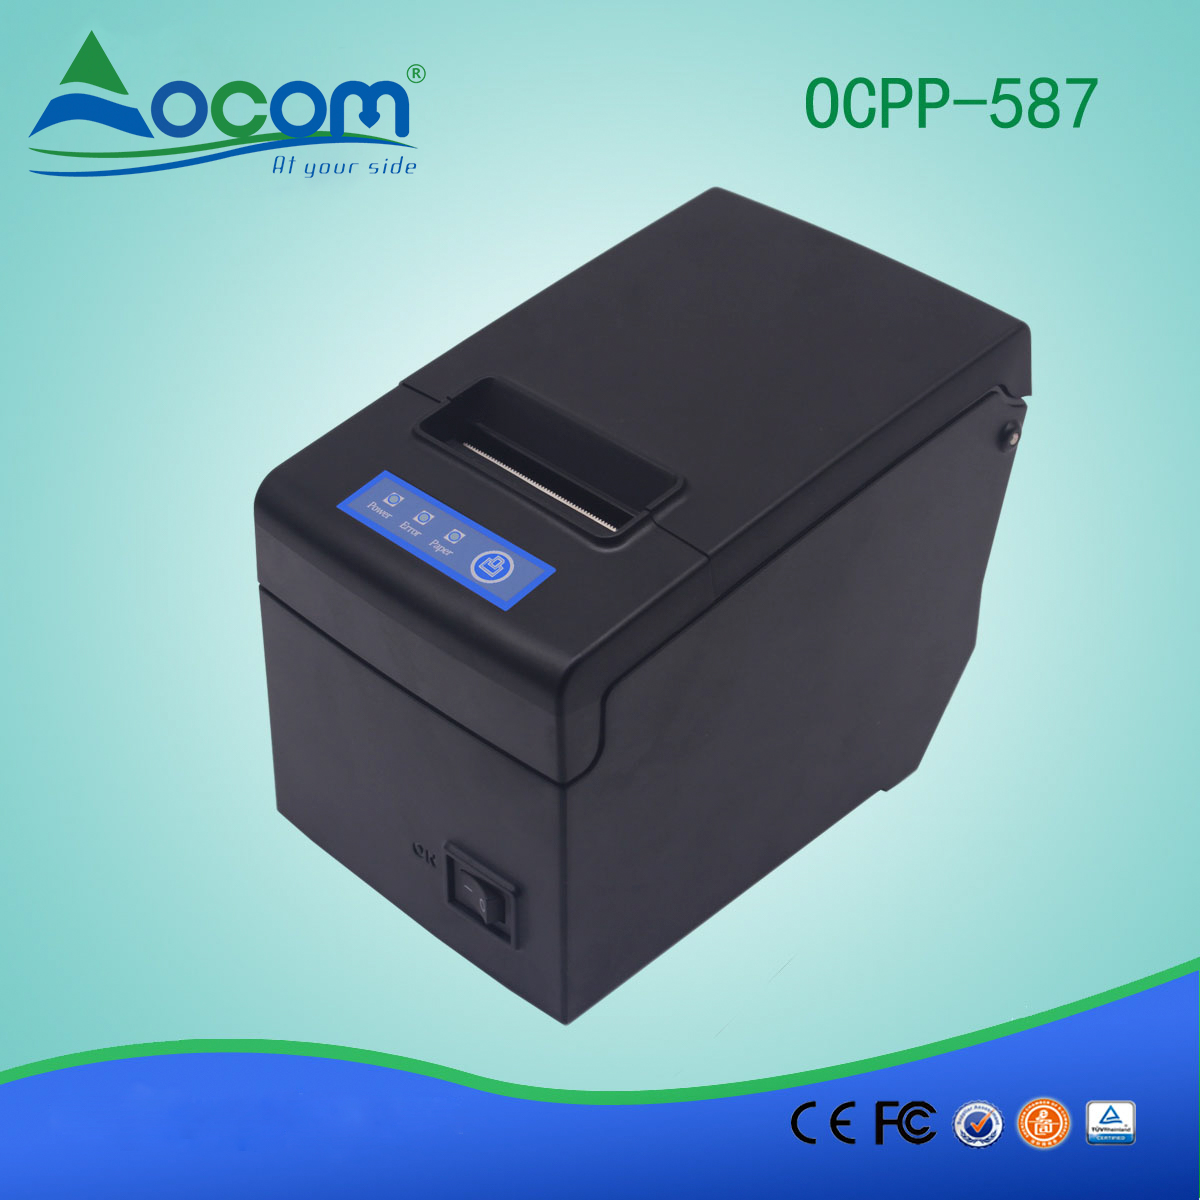 Imprimante de reçus thermiques 58 mm avec grand porte-papier OCPP-587-L LAN / Ethernet Port